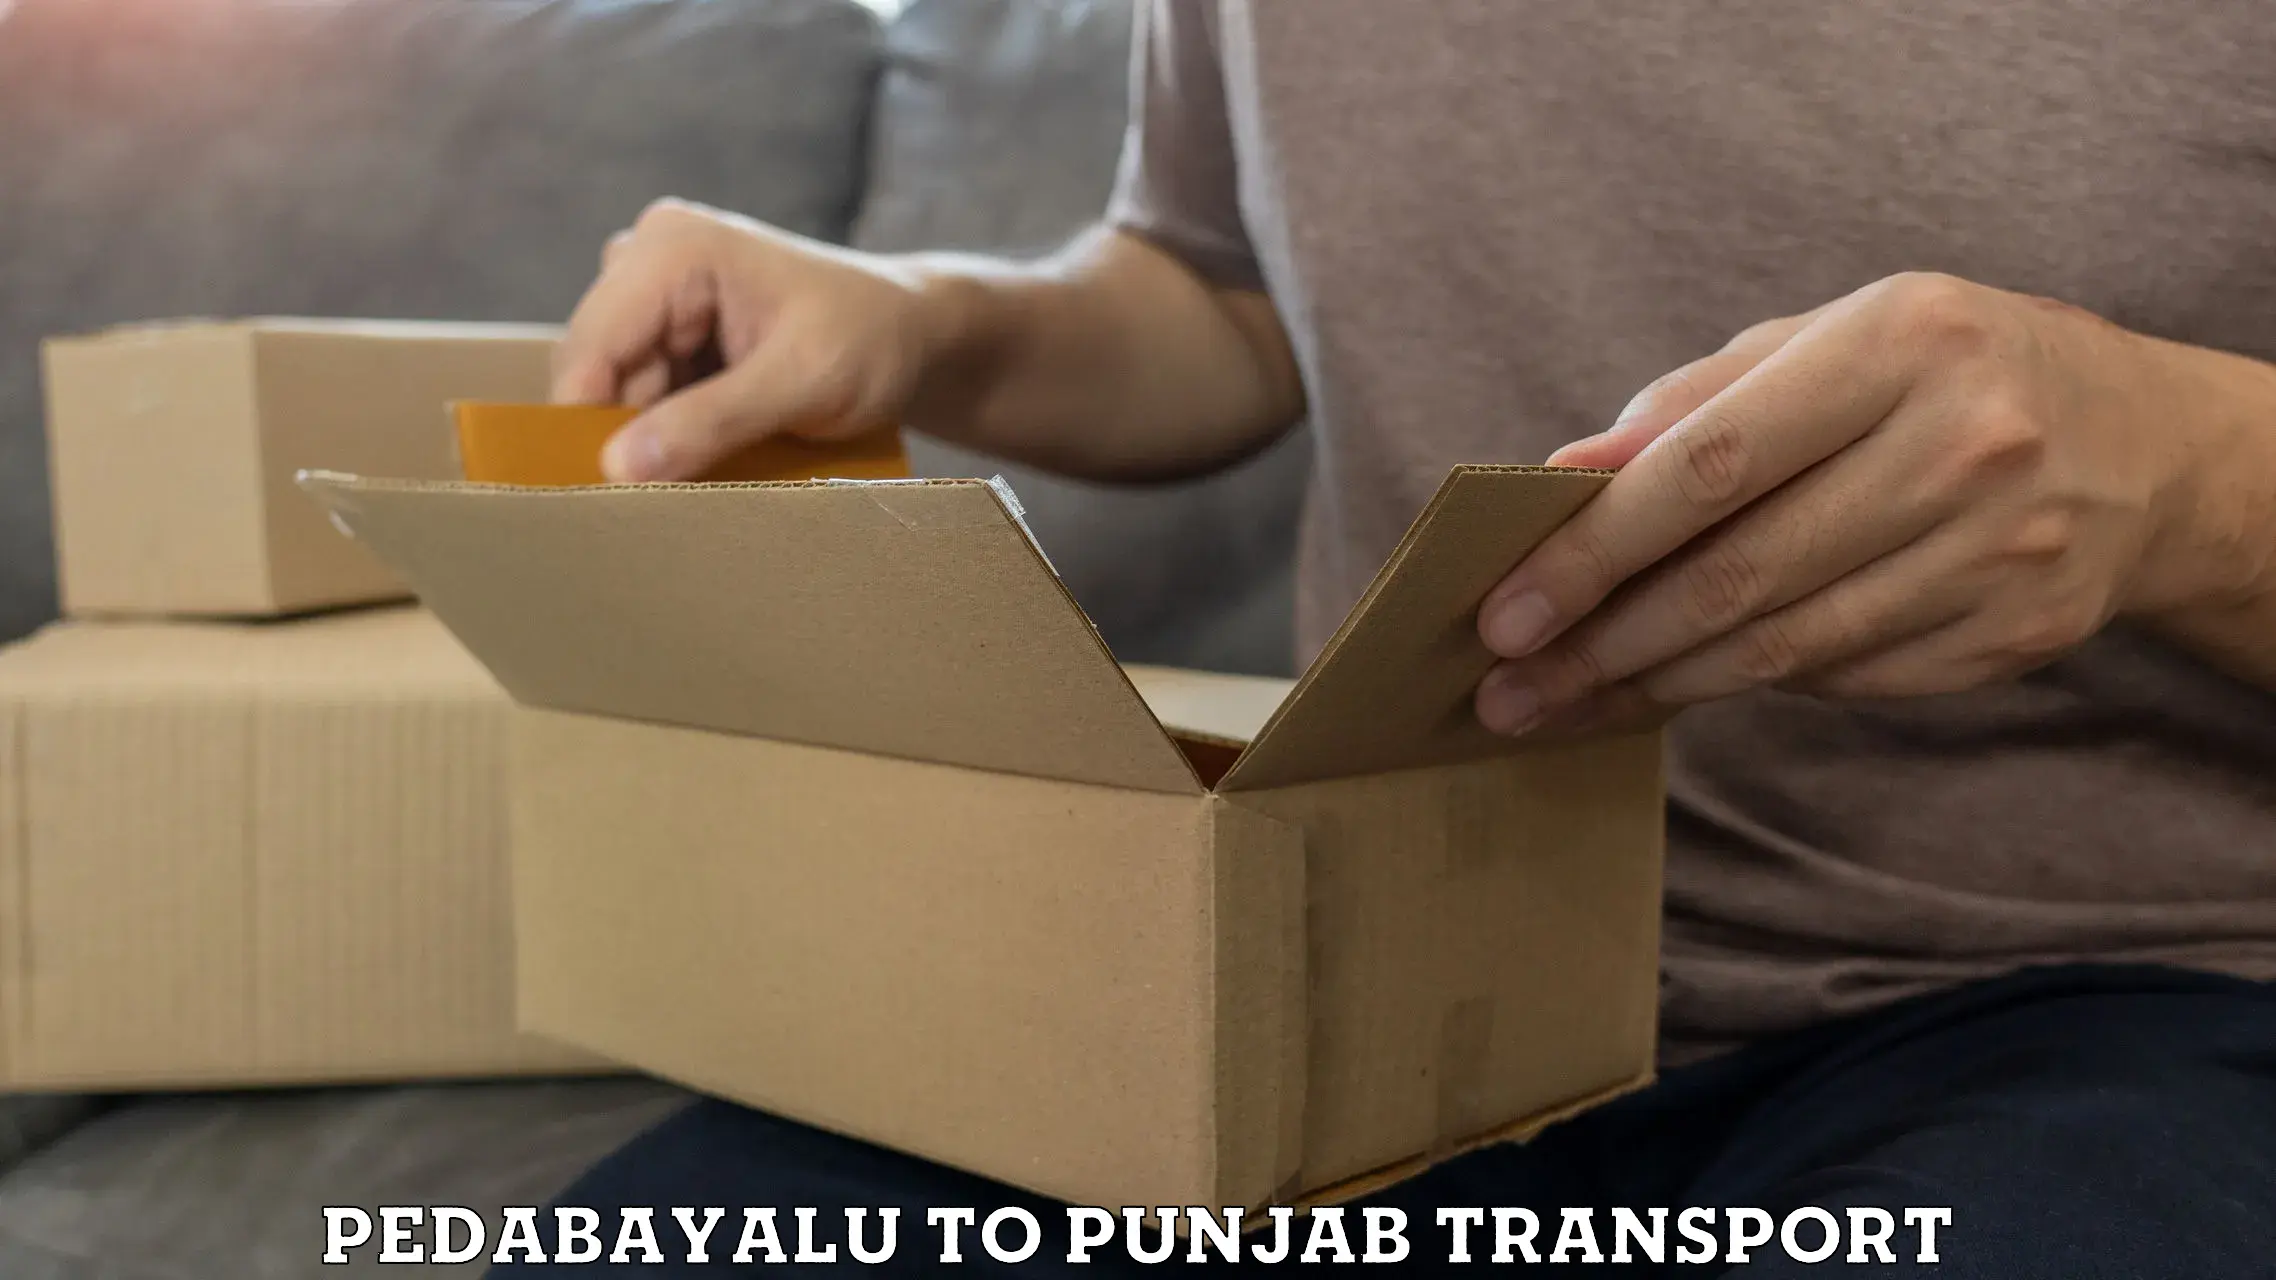 Transportation services Pedabayalu to Nawanshahr